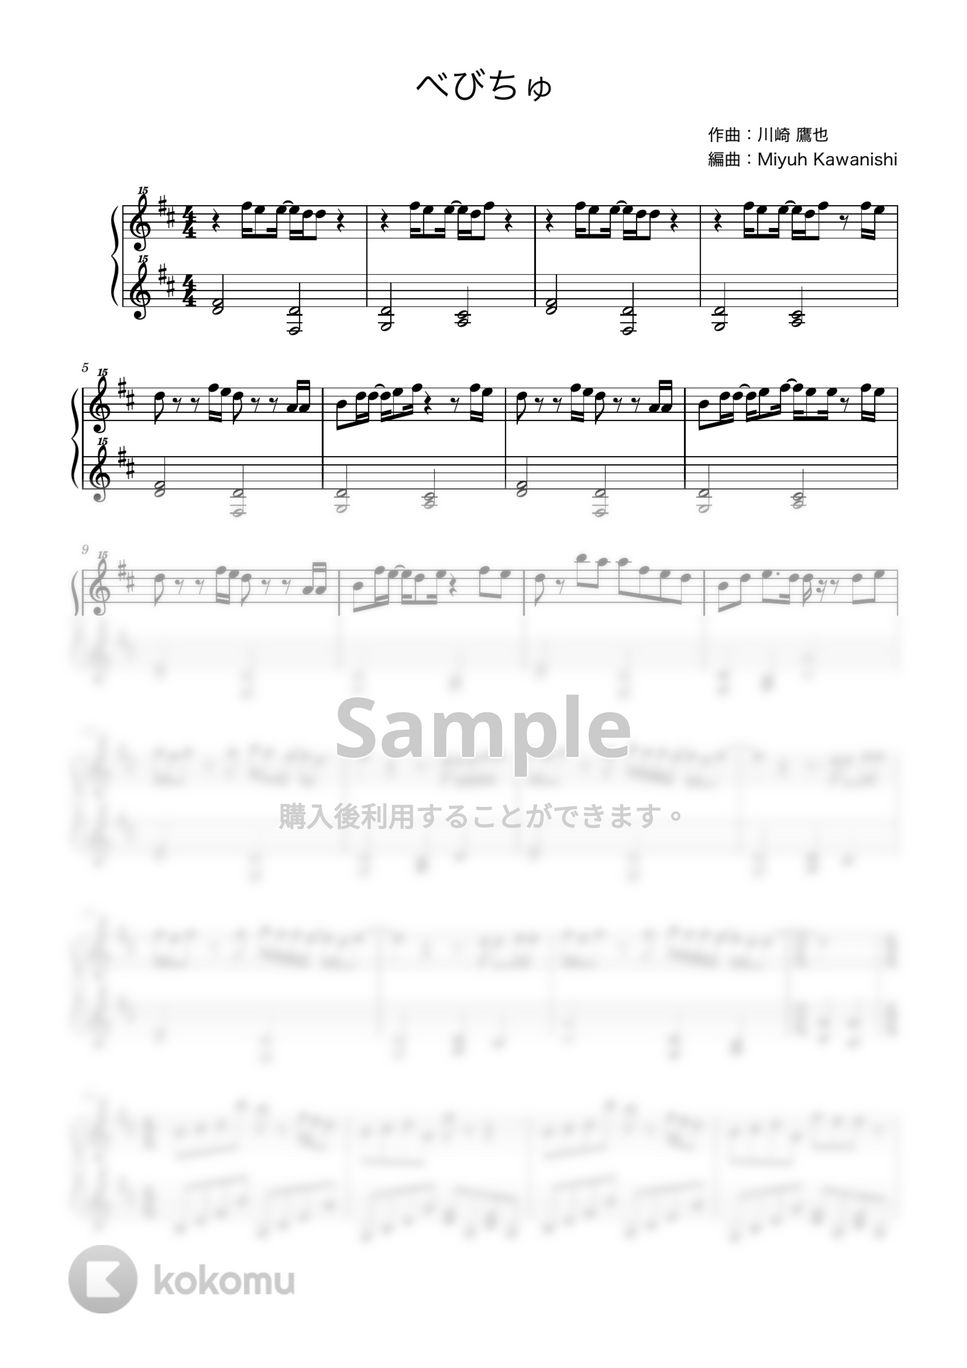 べびちゅ (シナぷしゅ / トイピアノ / 32鍵盤) by 川西三裕